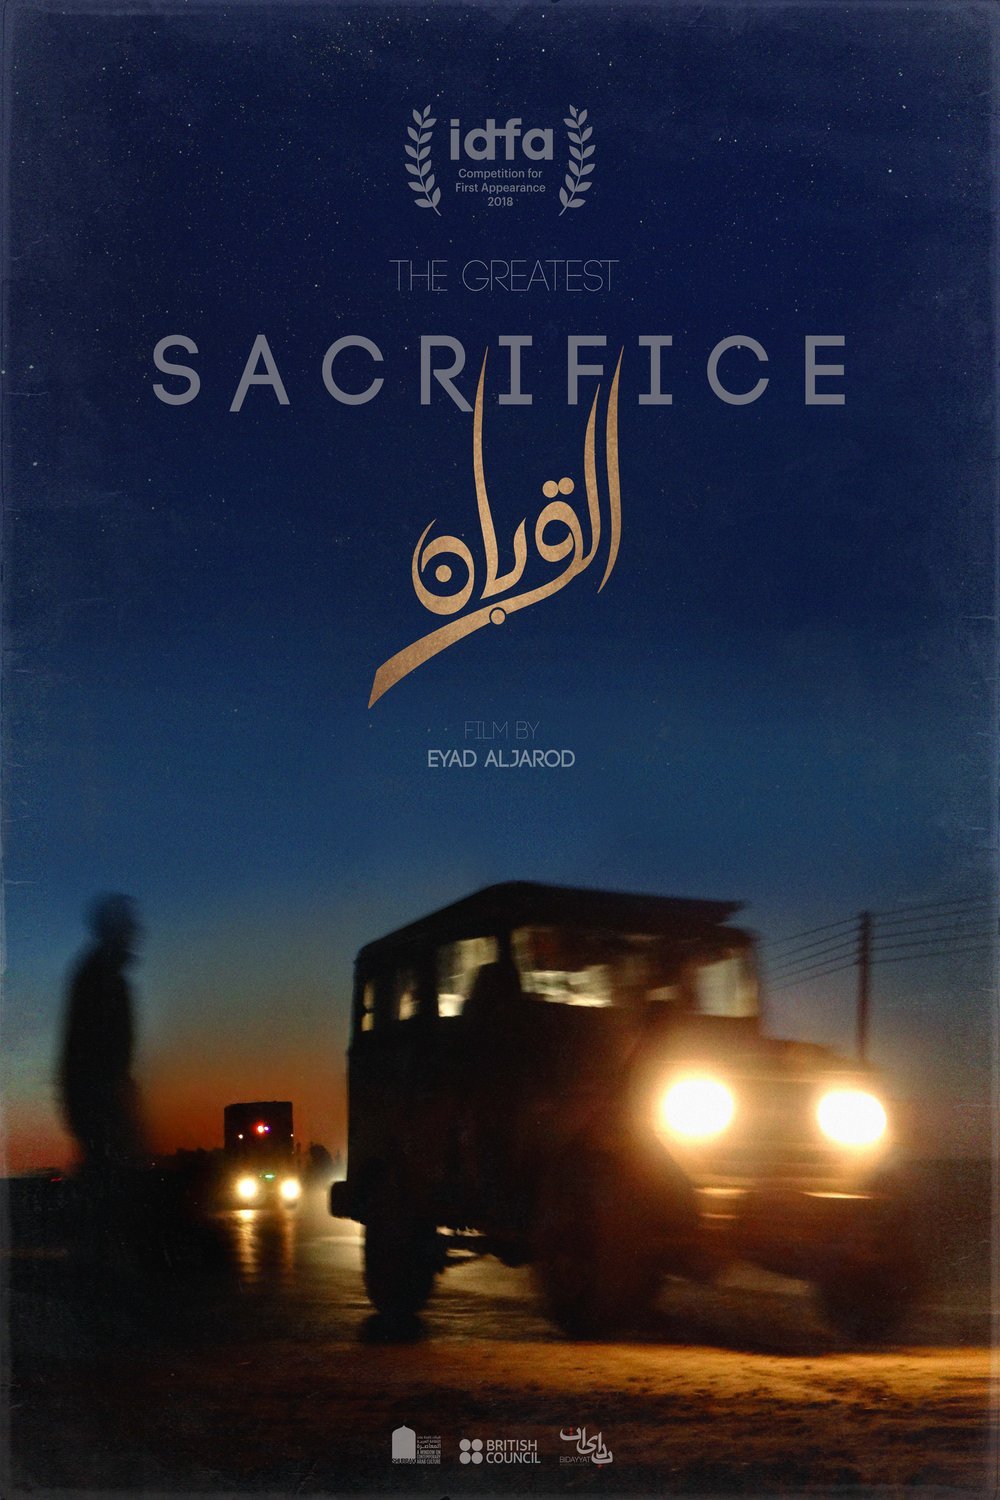 L'affiche originale du film The Greatest Sacrifice en arabe